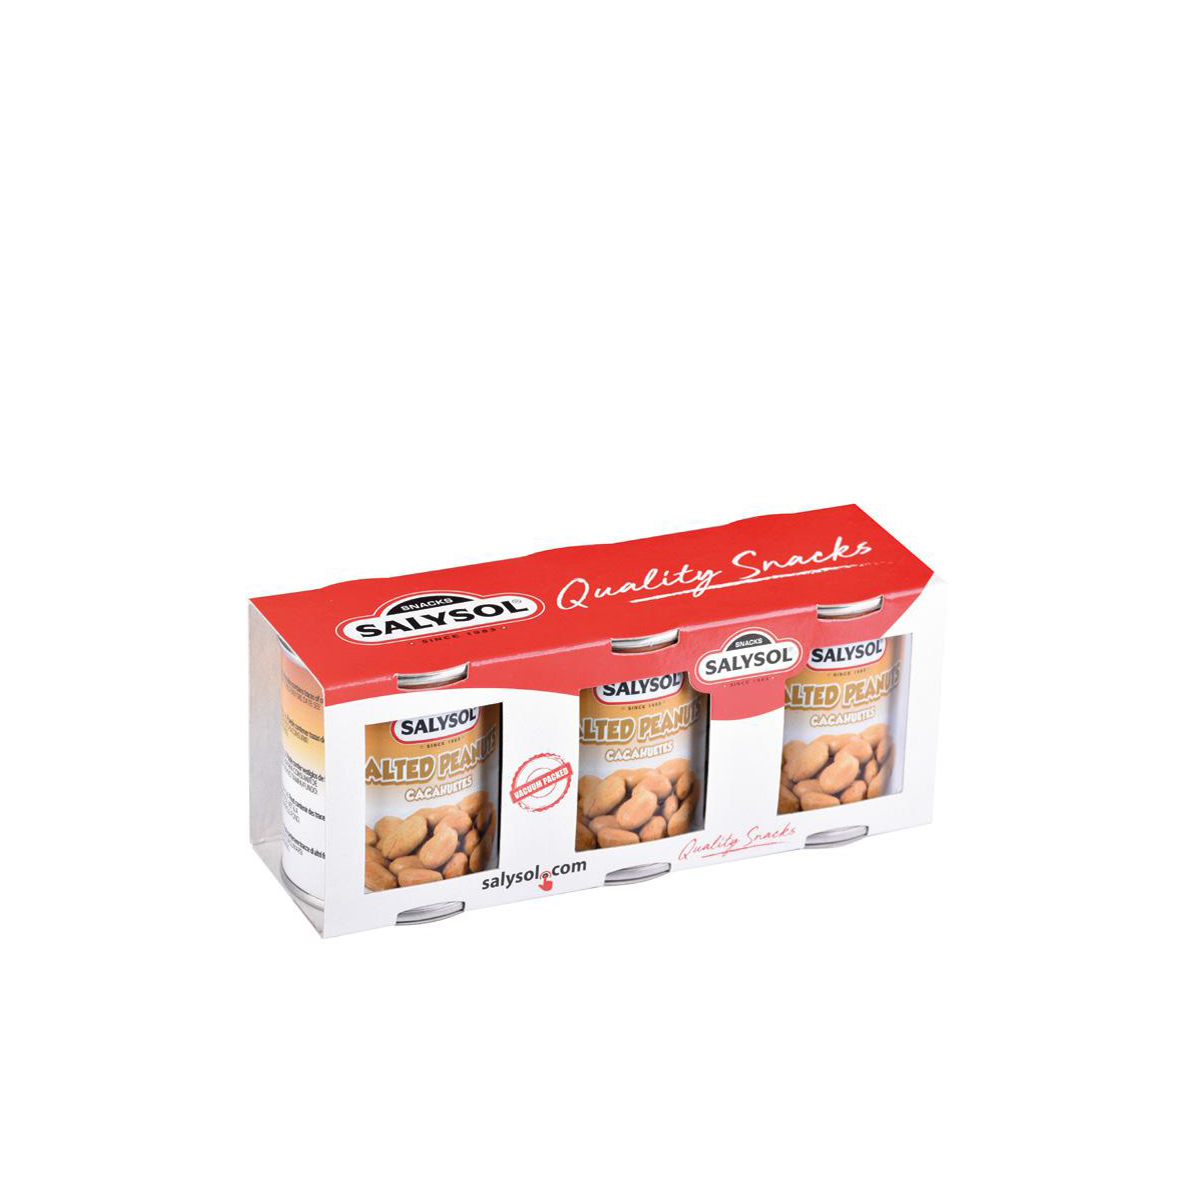 MINIBAR!!!Salysol Snack-Sorten Karton mit 48 Dosen Für die Minibar. 